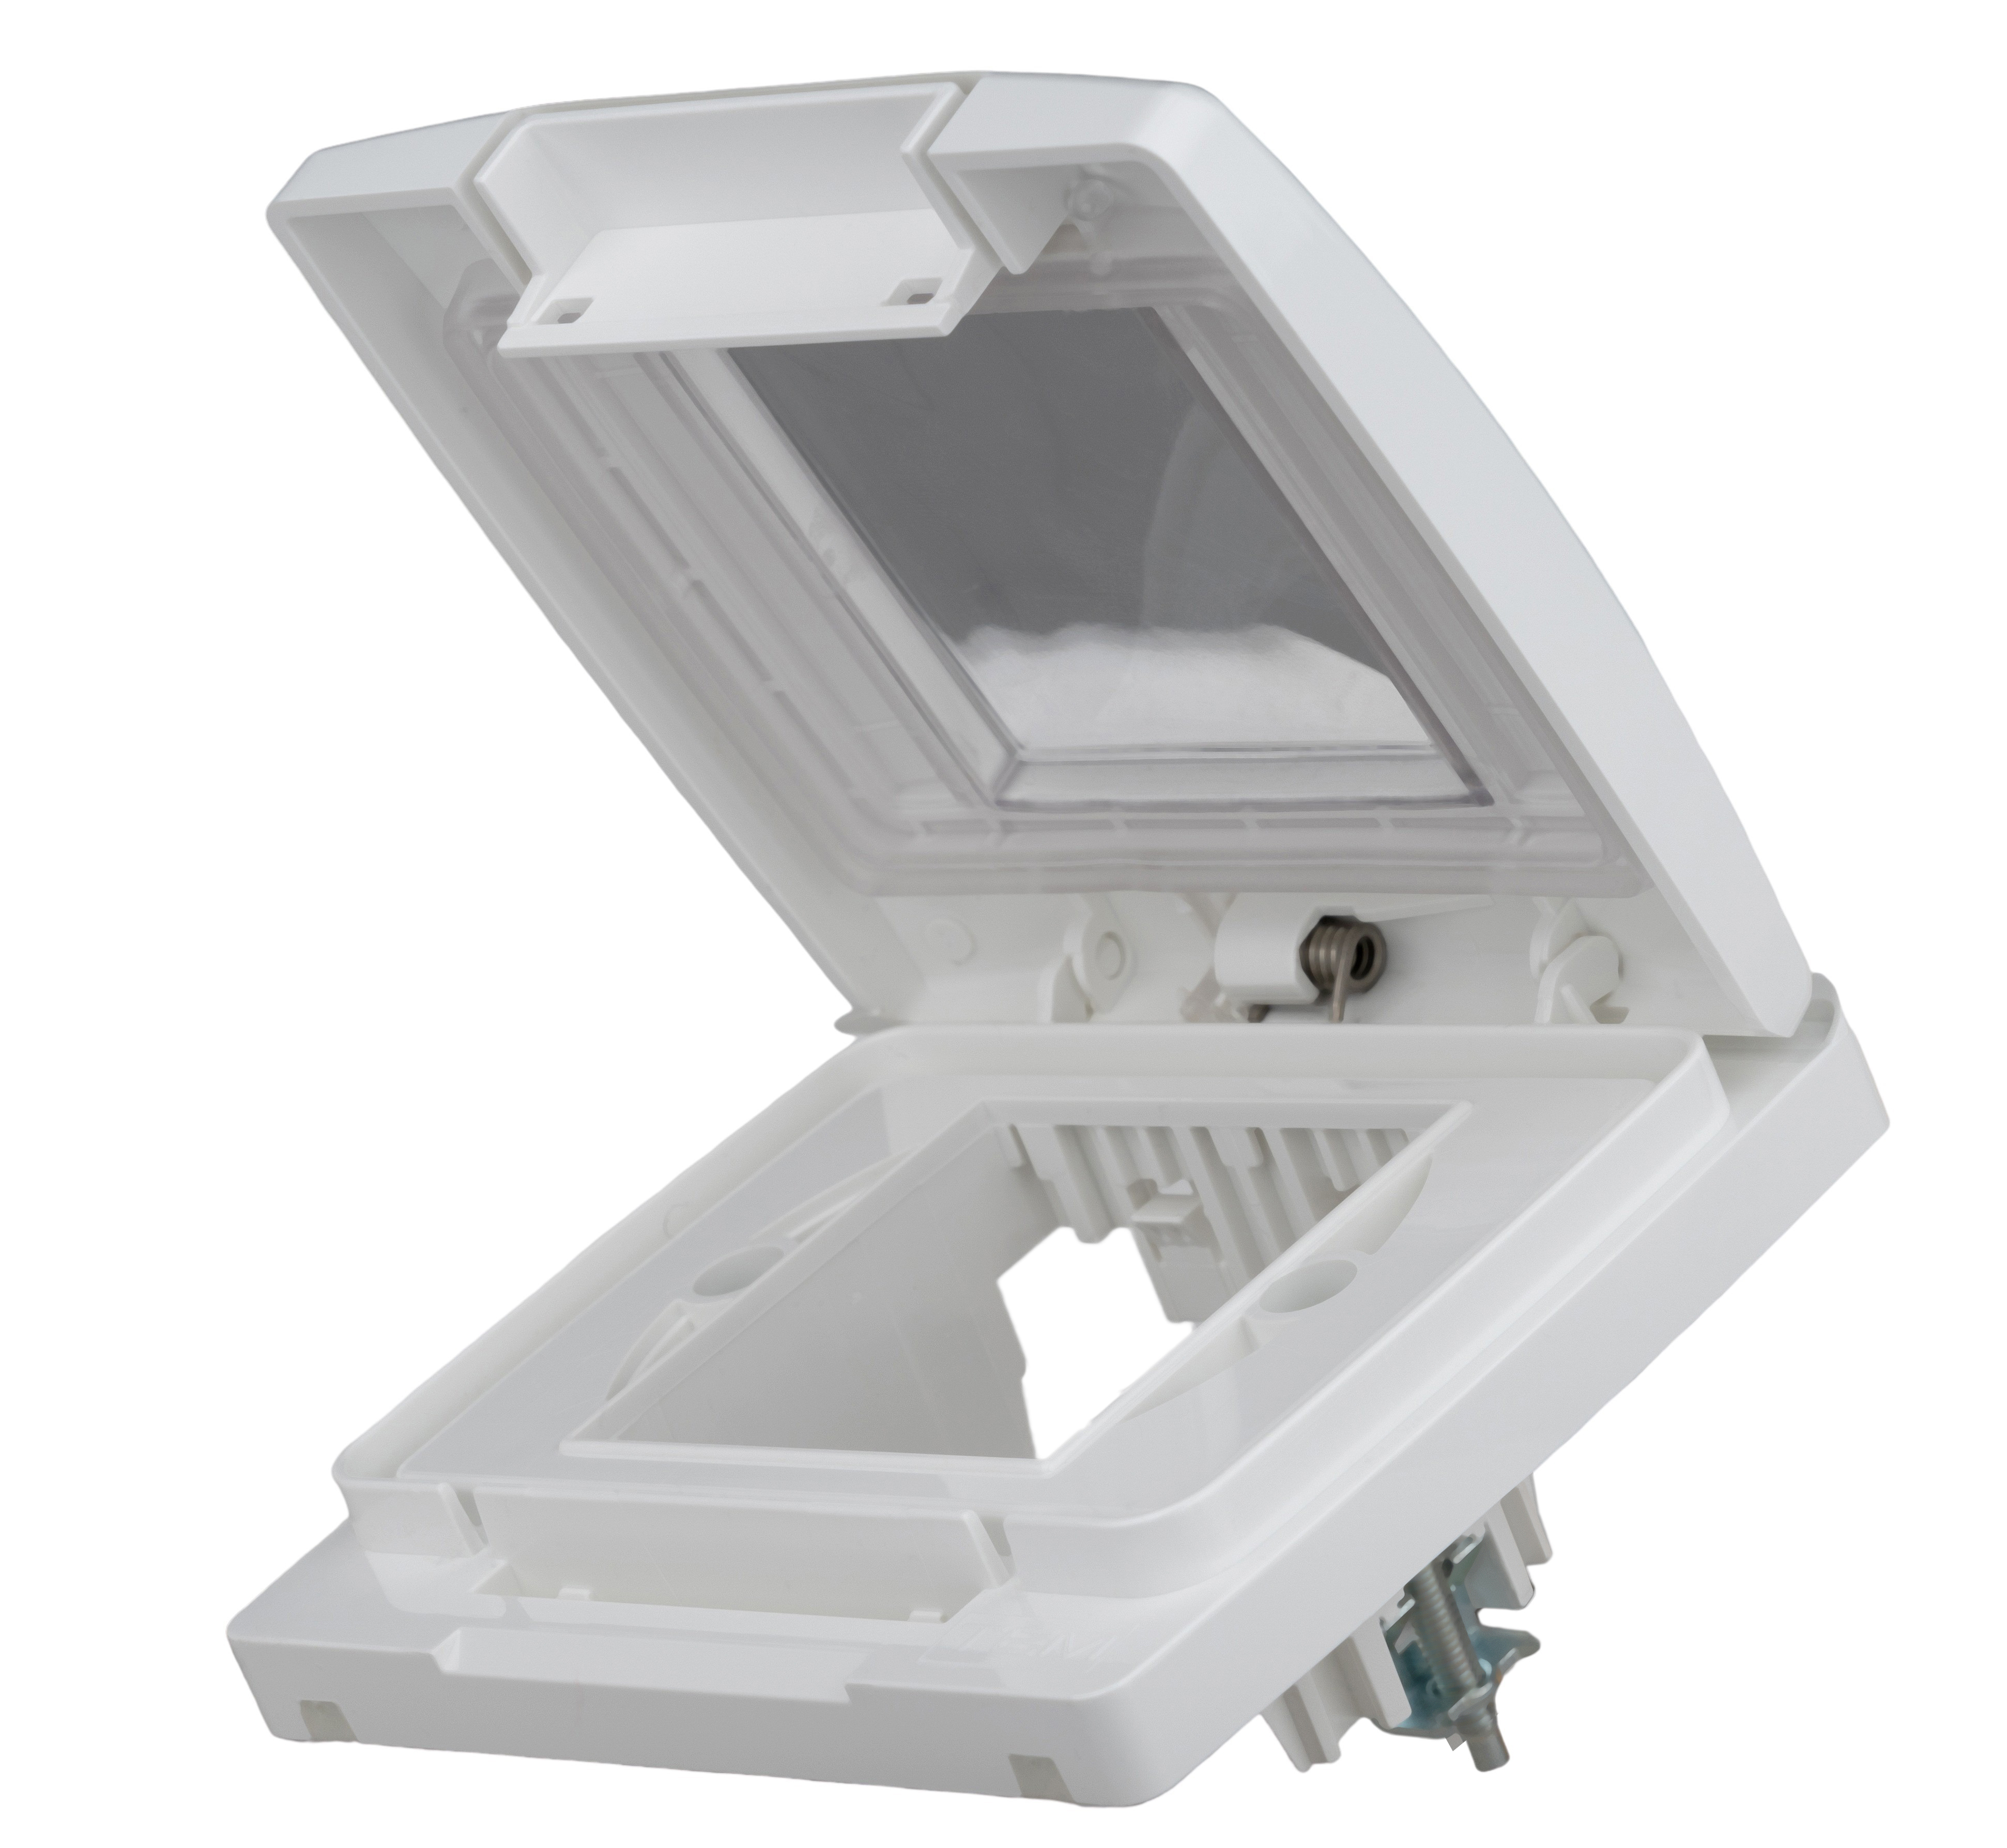 UP-Klappgehäuse, IP55, 3M, transparenter Deckel, weiß